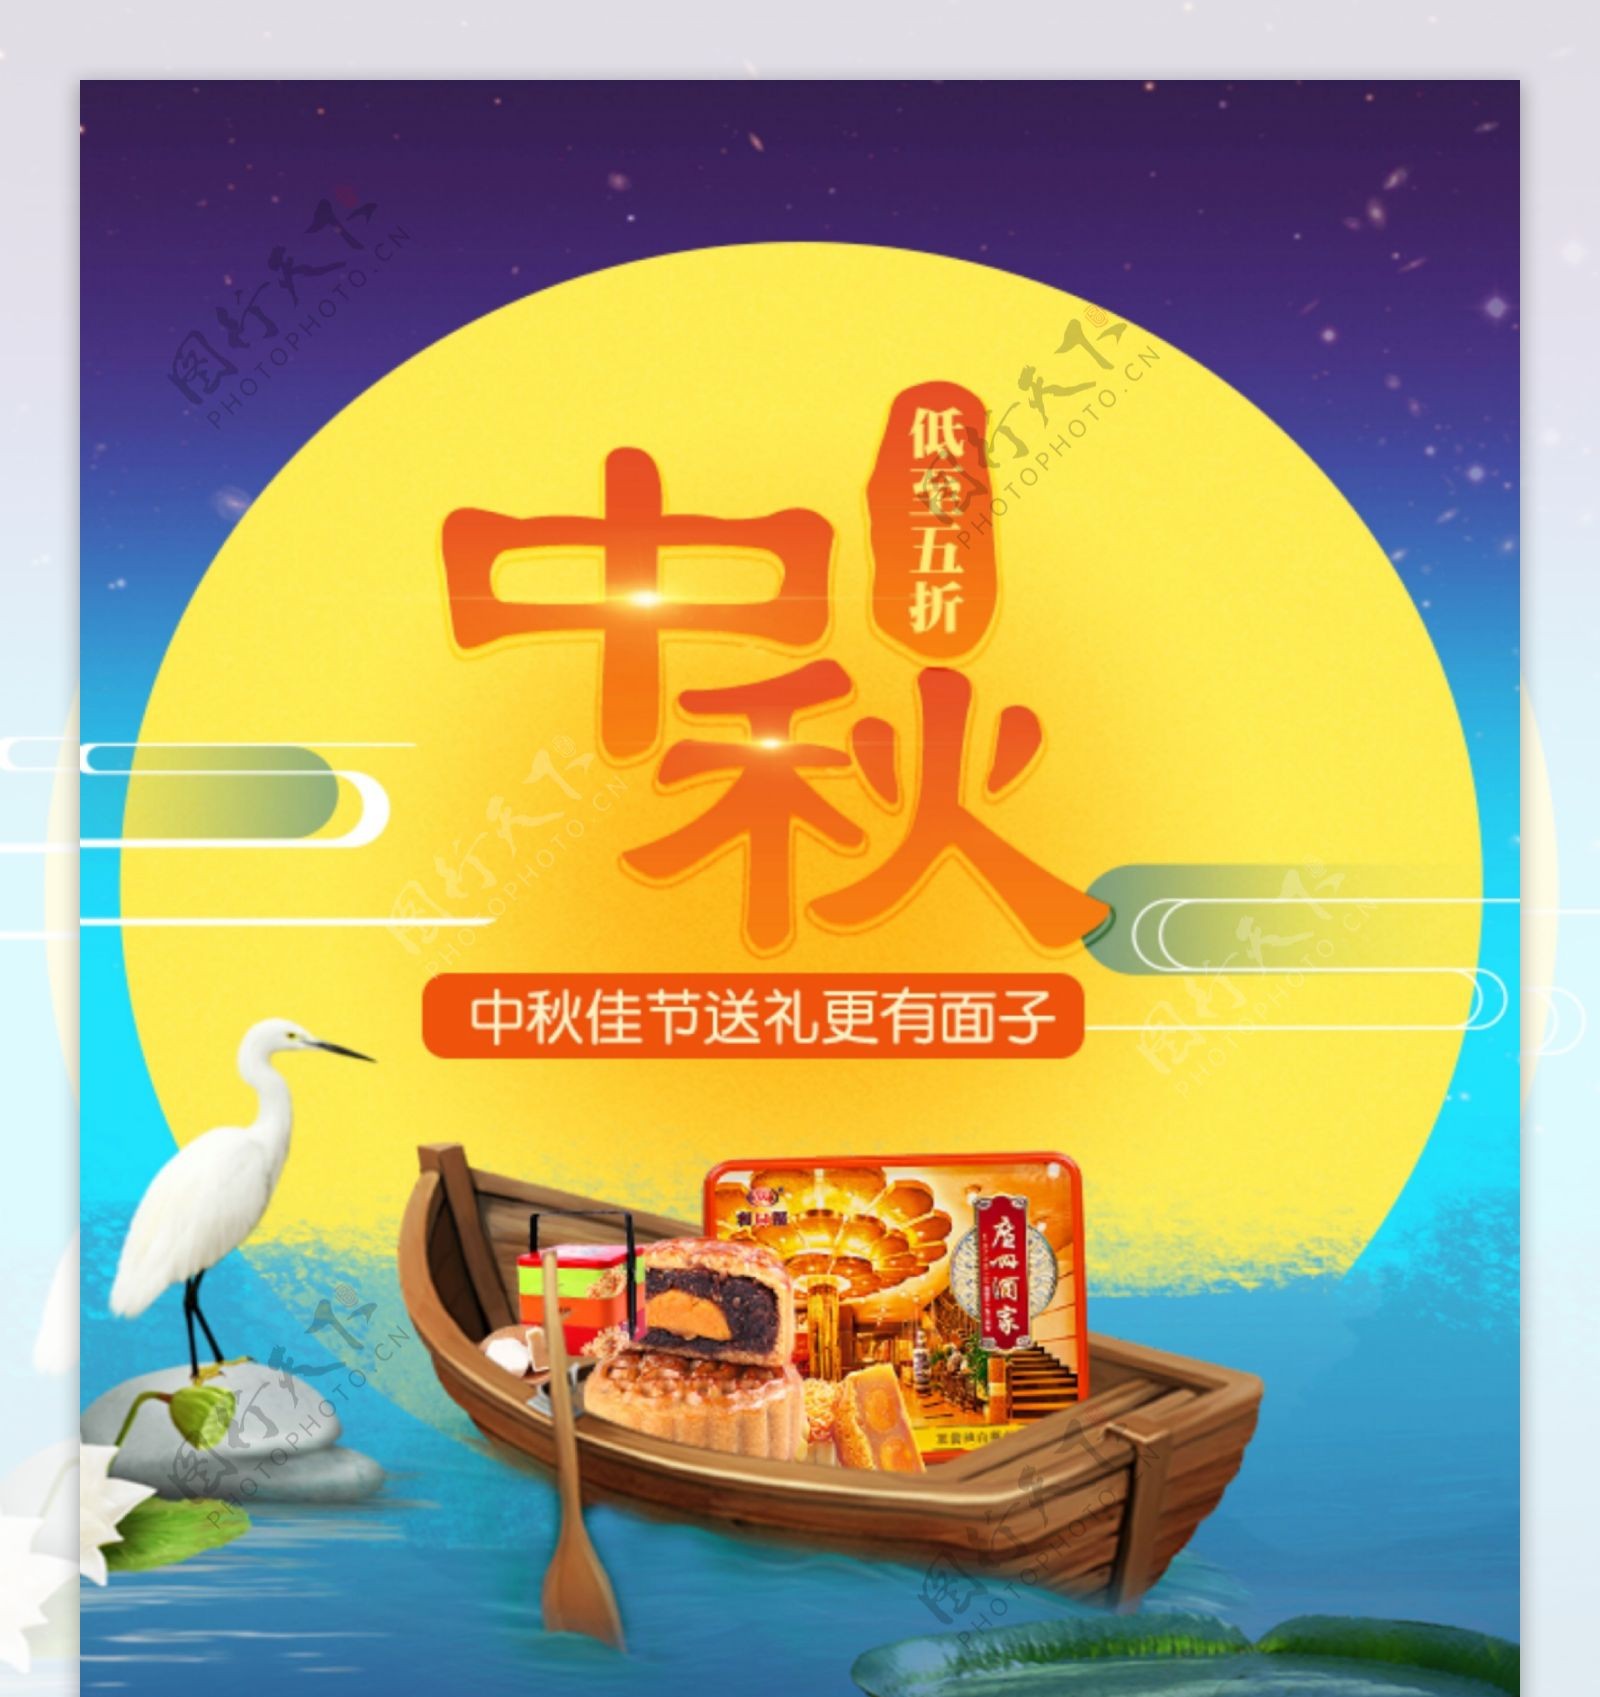 中秋节月饼促销活动手机端首页装修模板